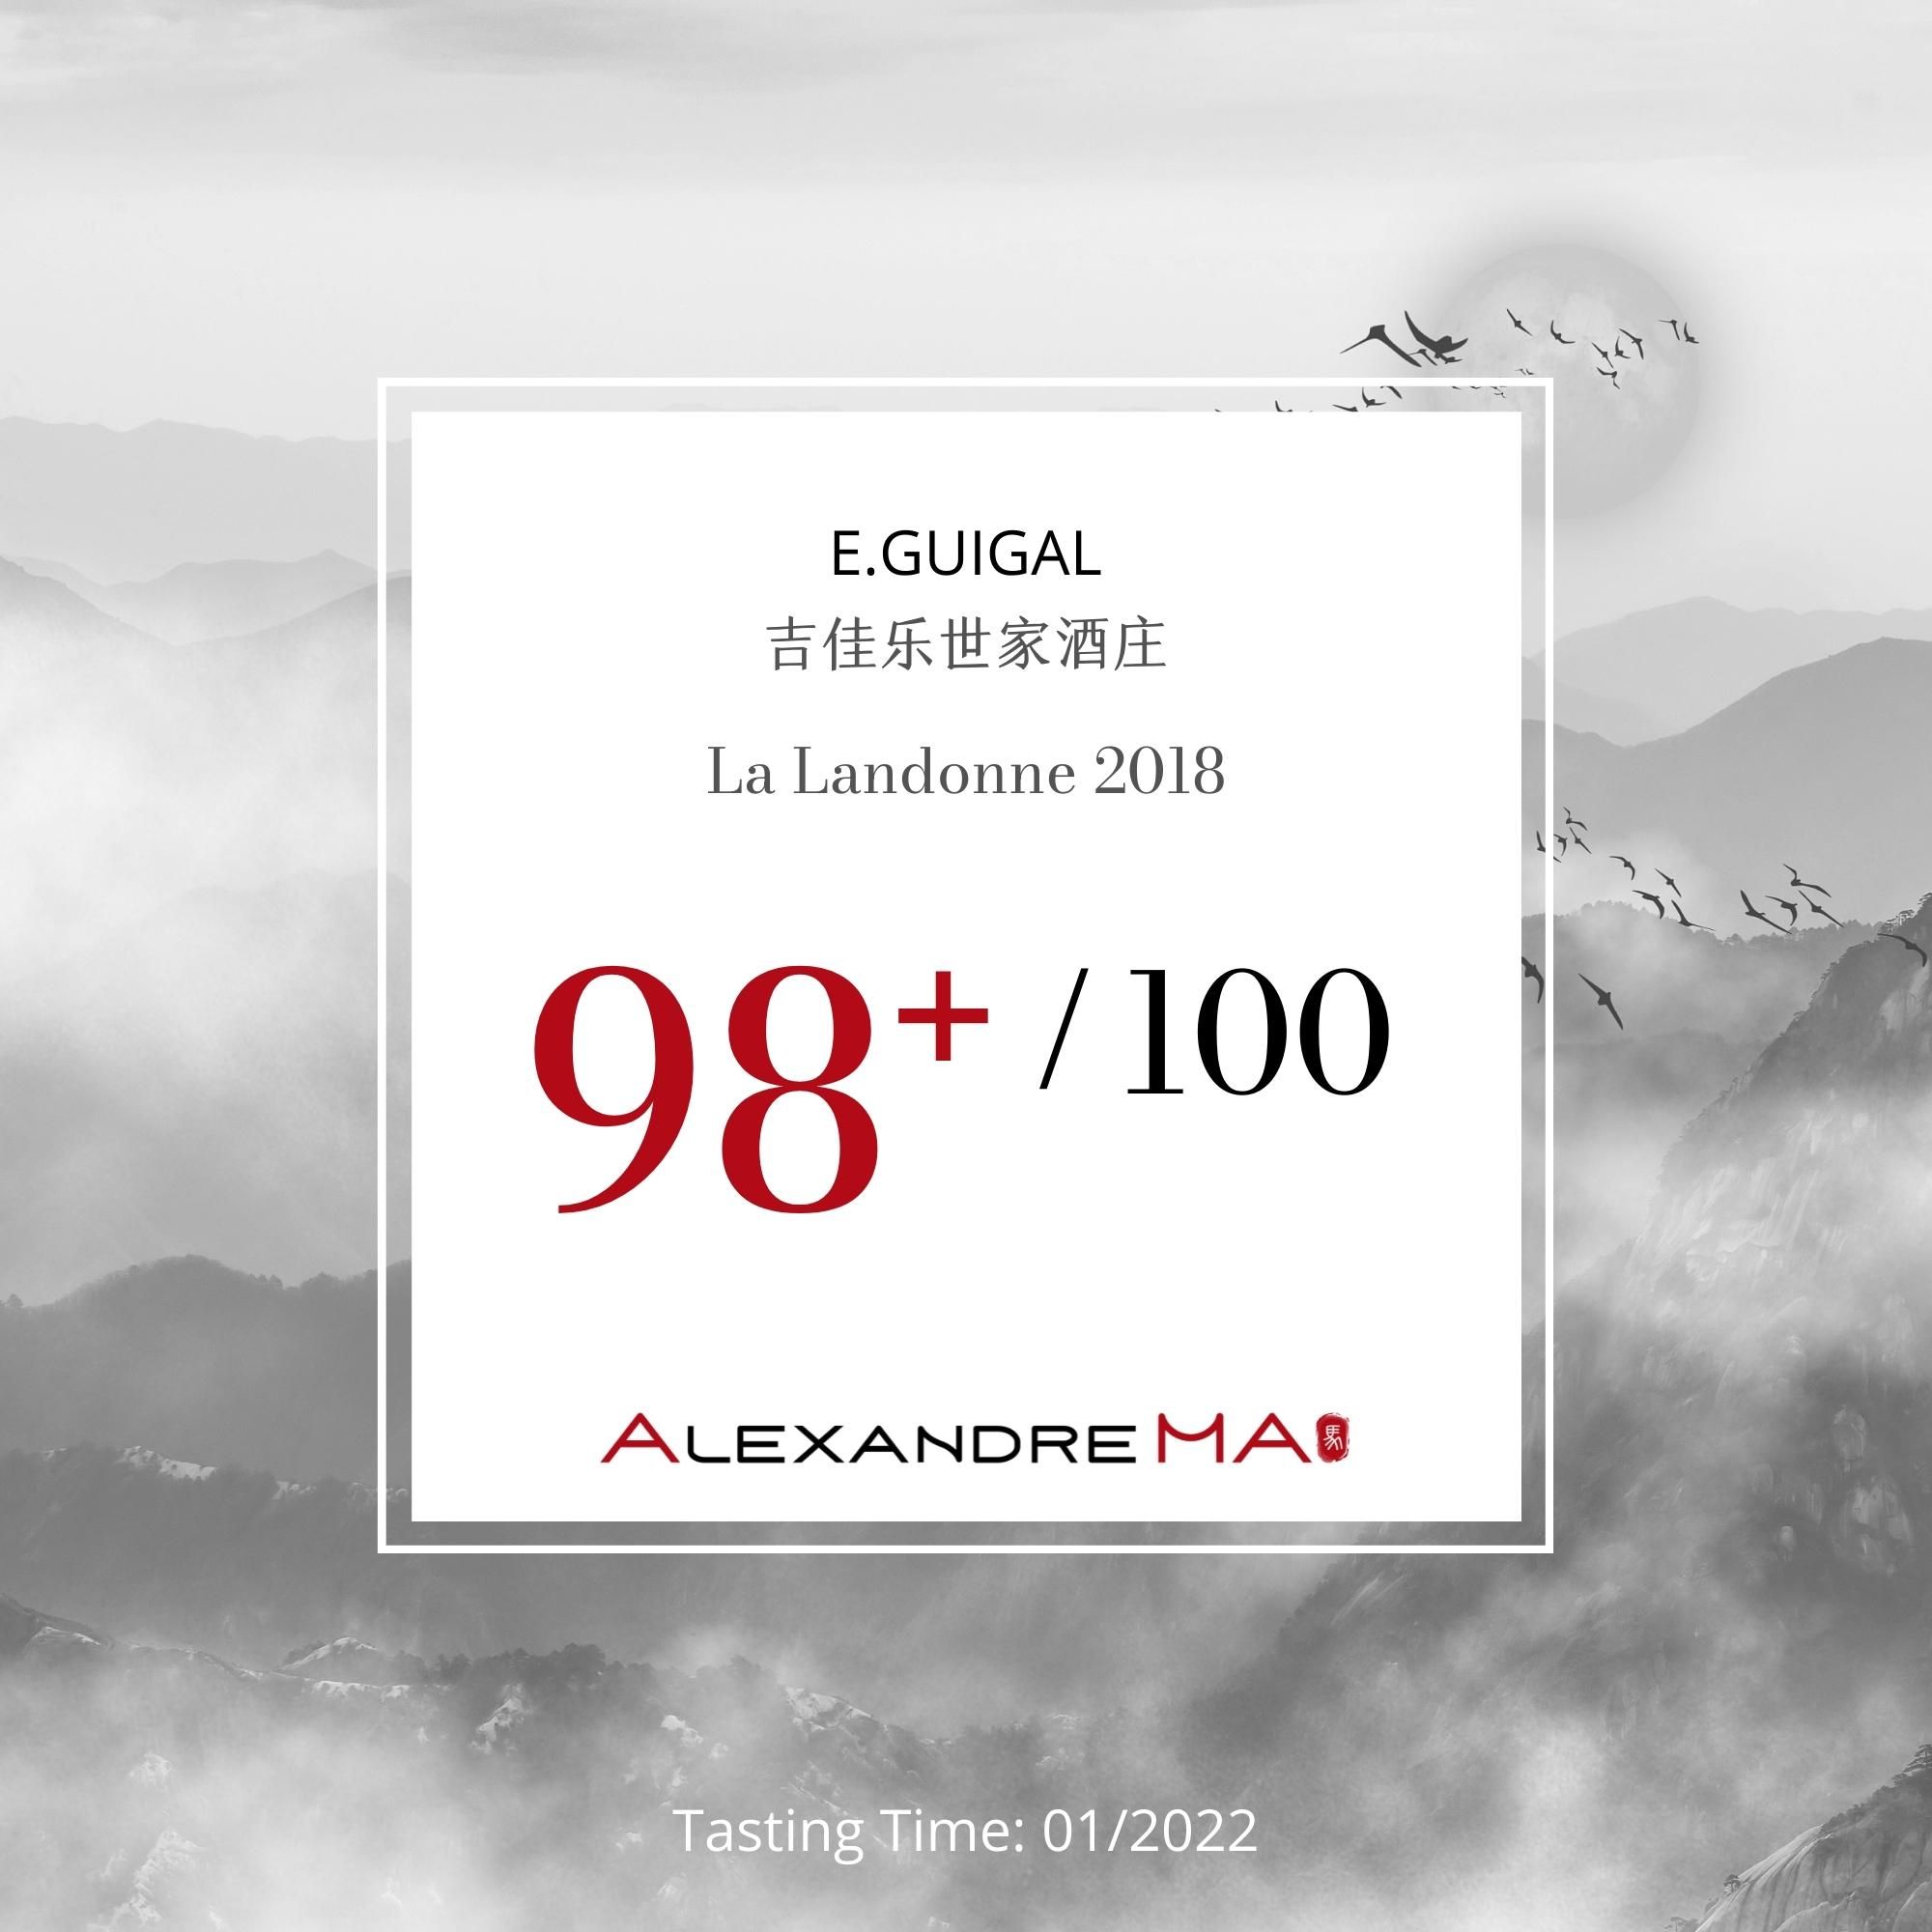 E.Guigal-La Landonne 2018 - Alexandre MA